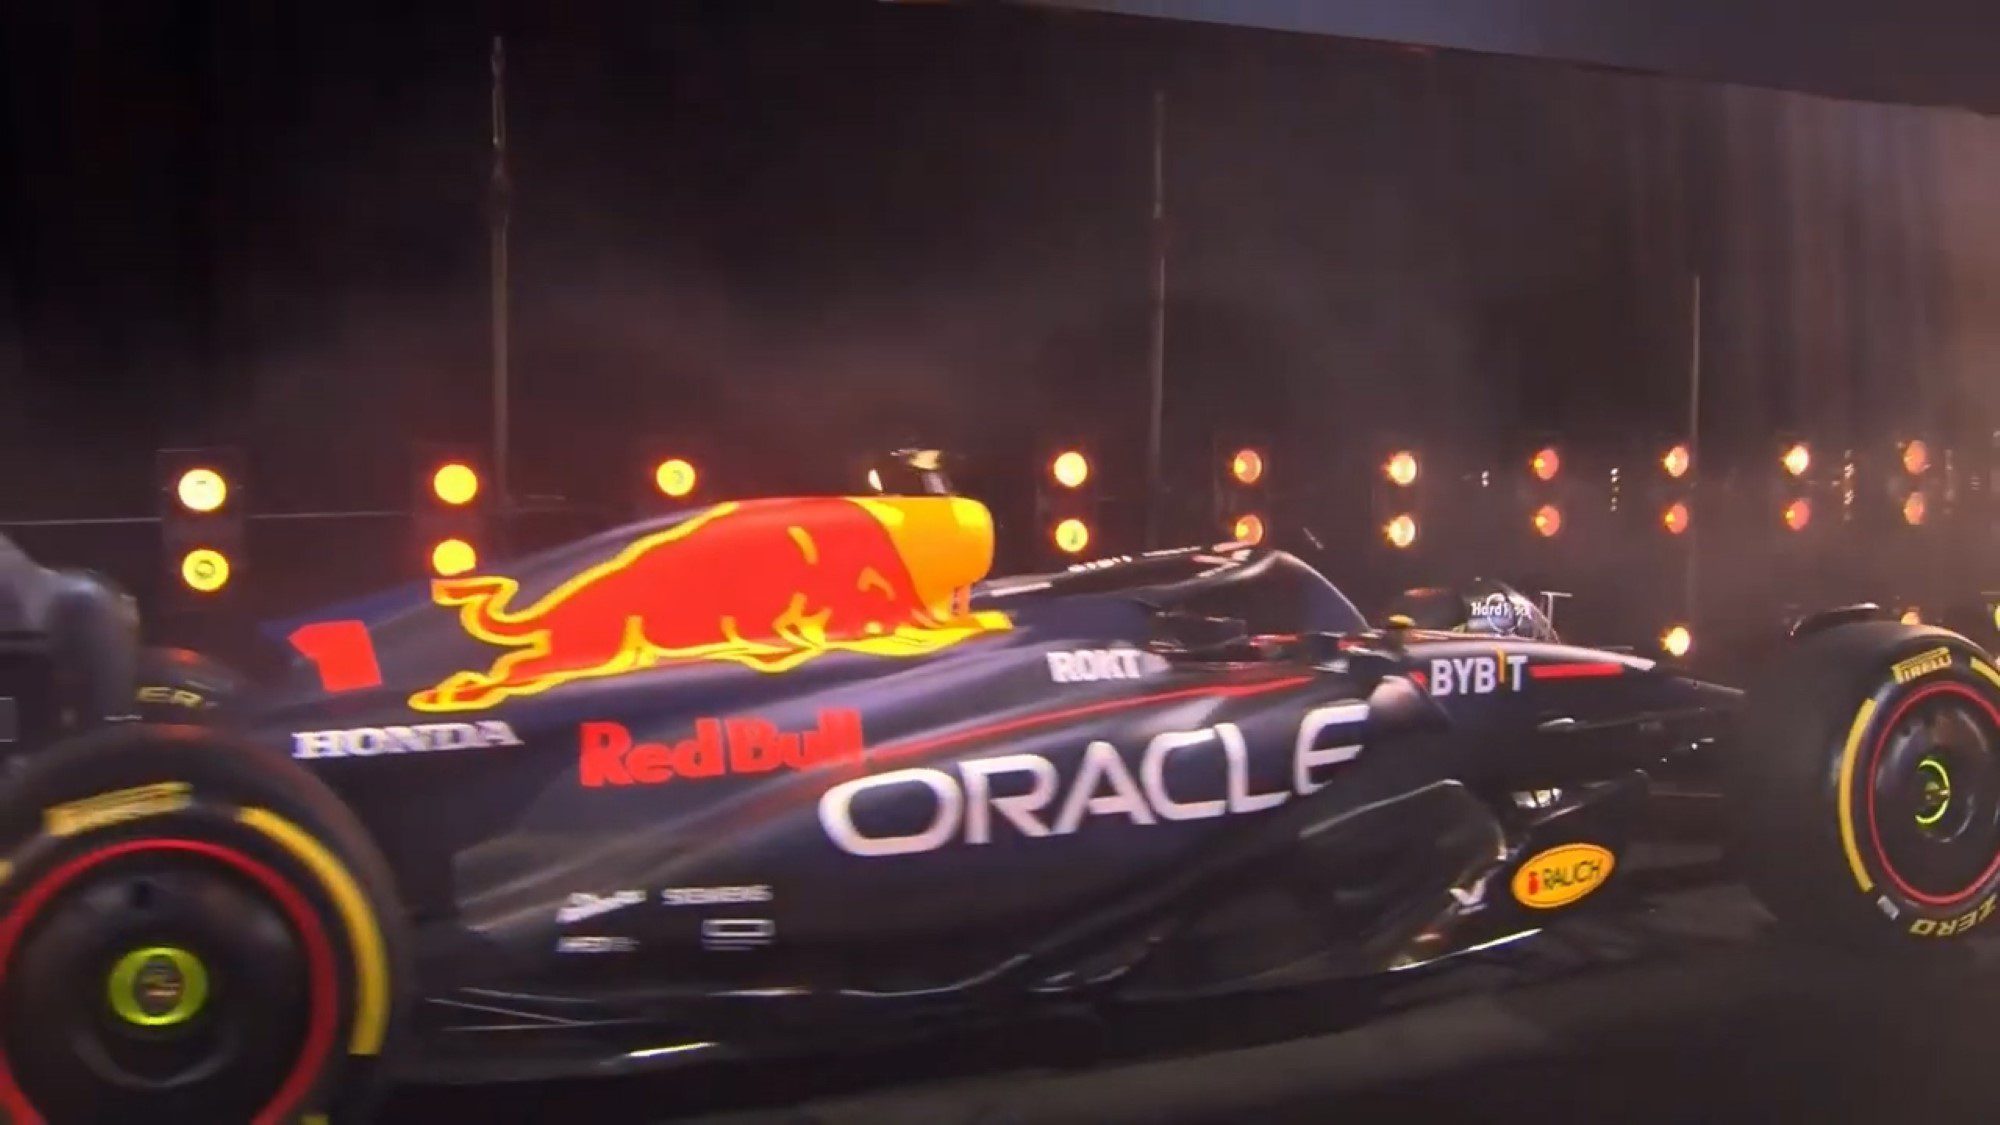 Pintura especial da Red Bull e nova pista adicionadas ao jogo 'F1 2021' -  Notícia de eSports